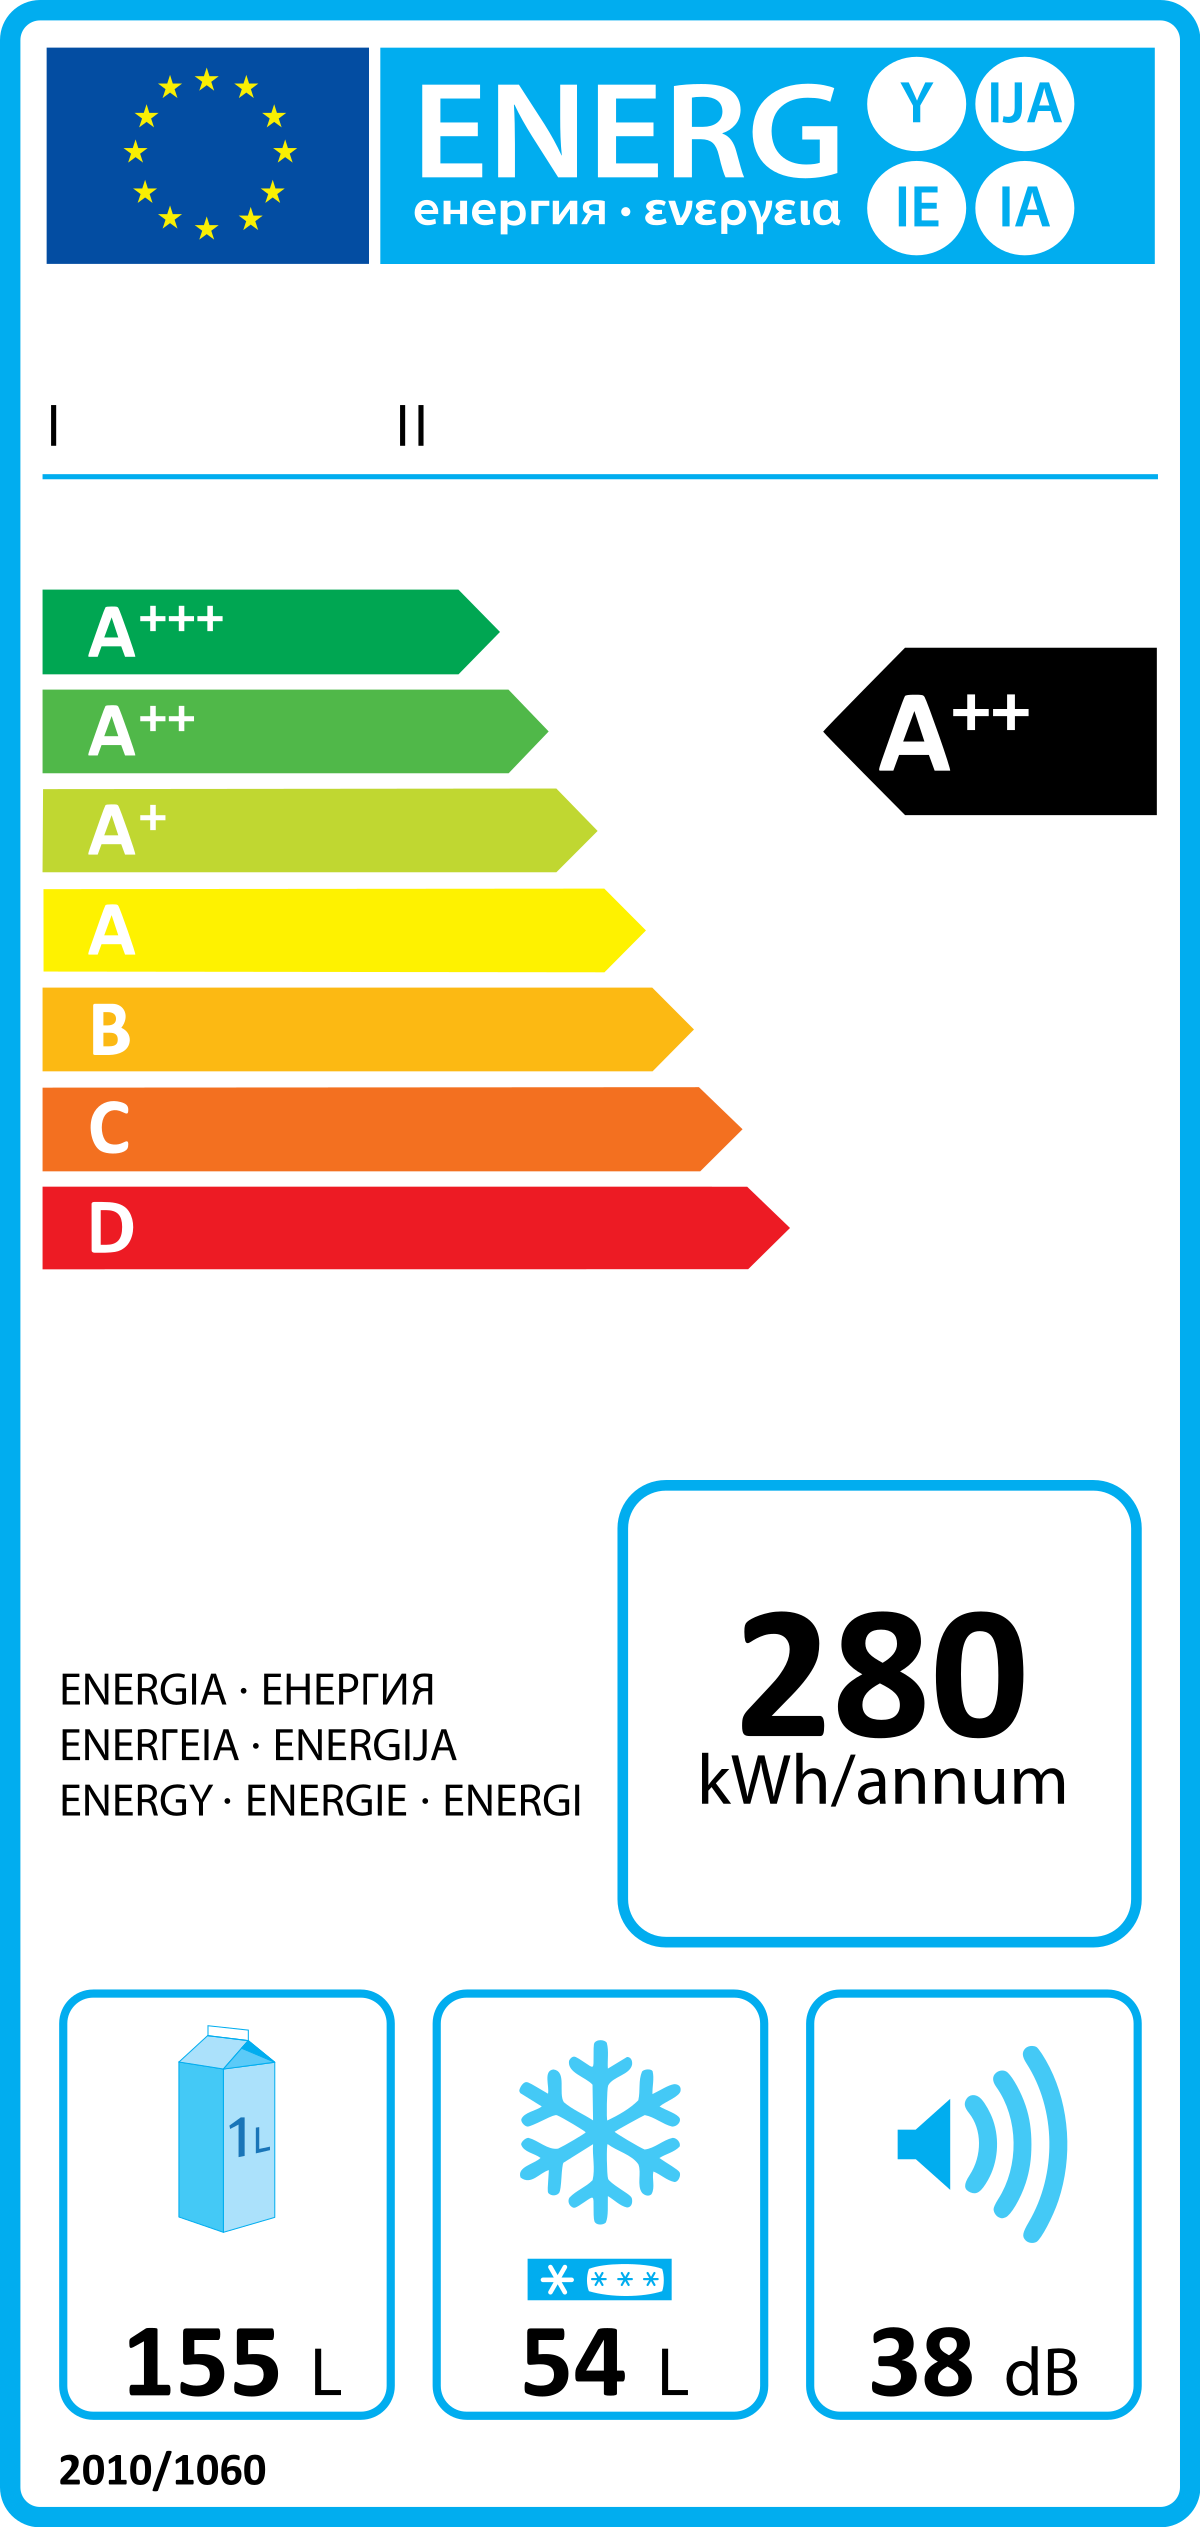 EU Energy Label for Refrigerators